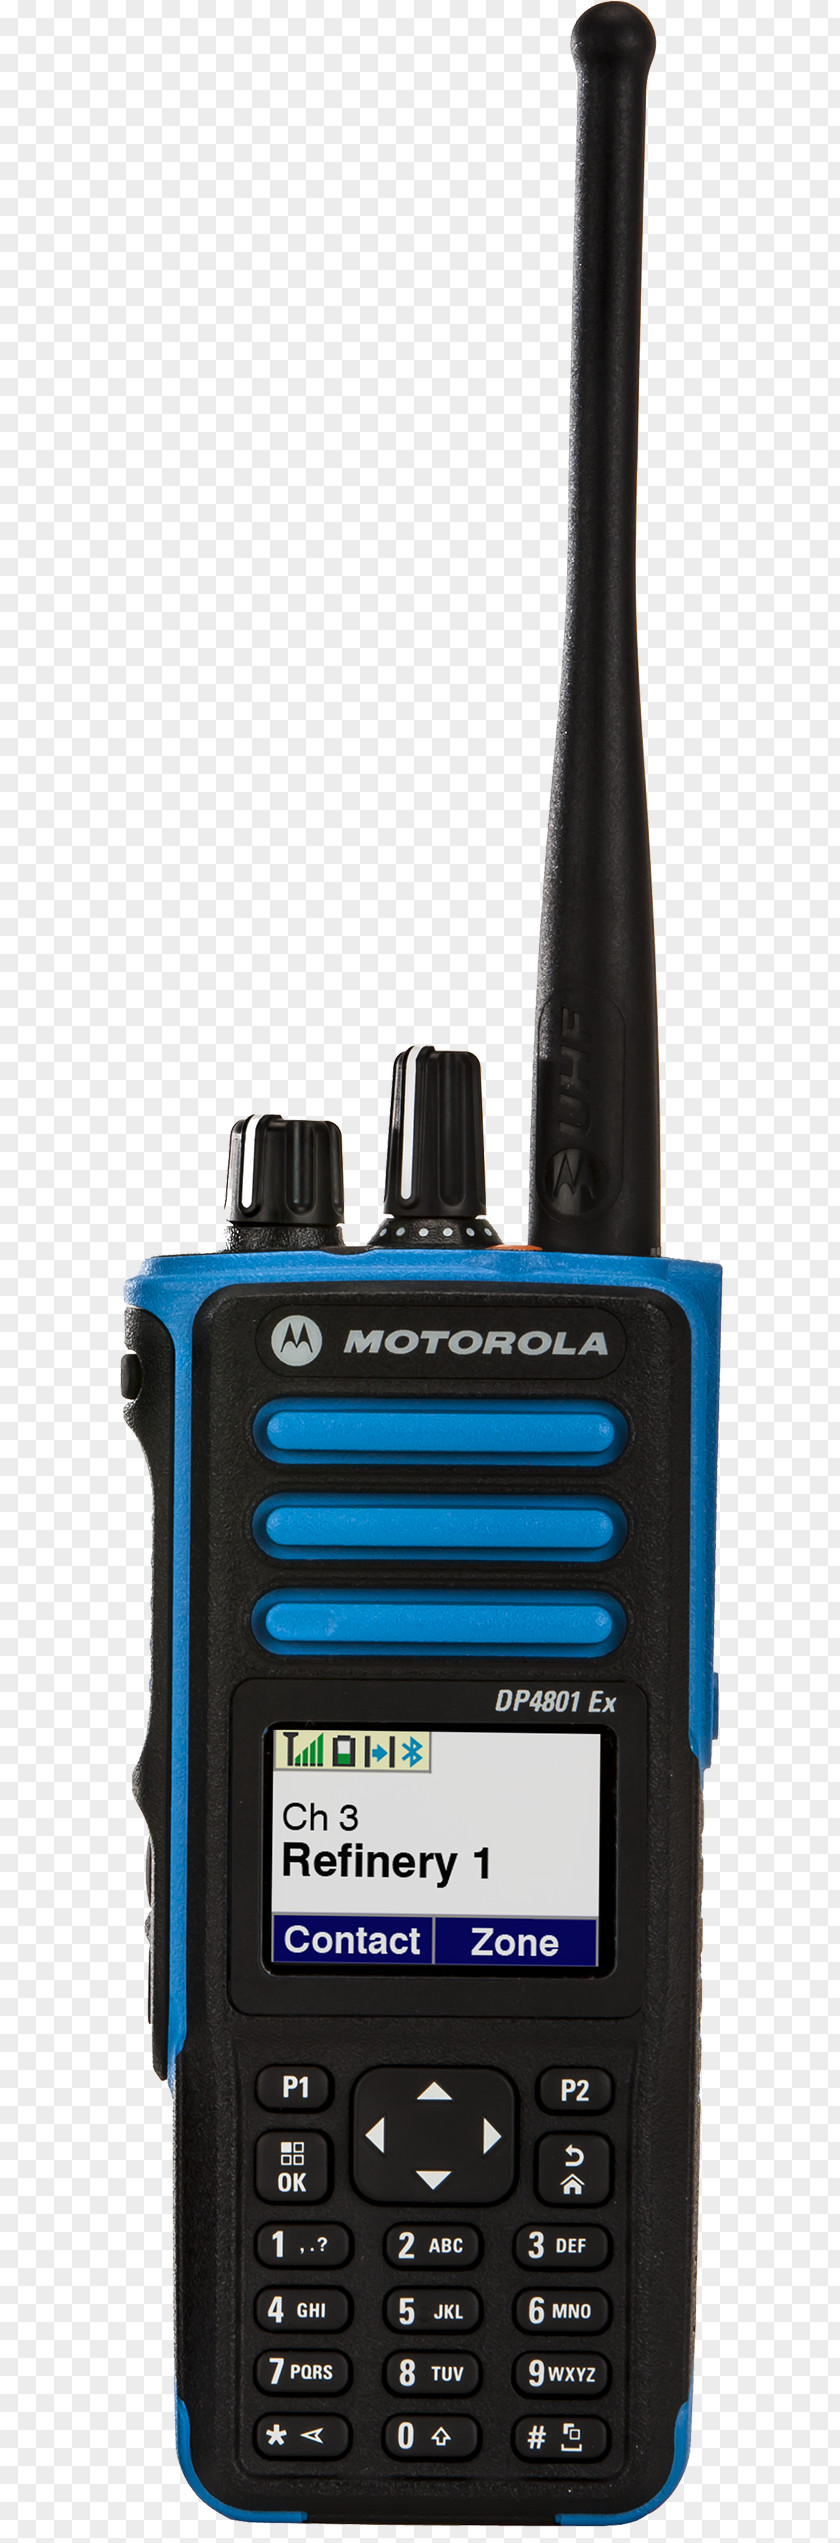 Radio Two-way Motorola Walkie-talkie Digital Mobile PNG